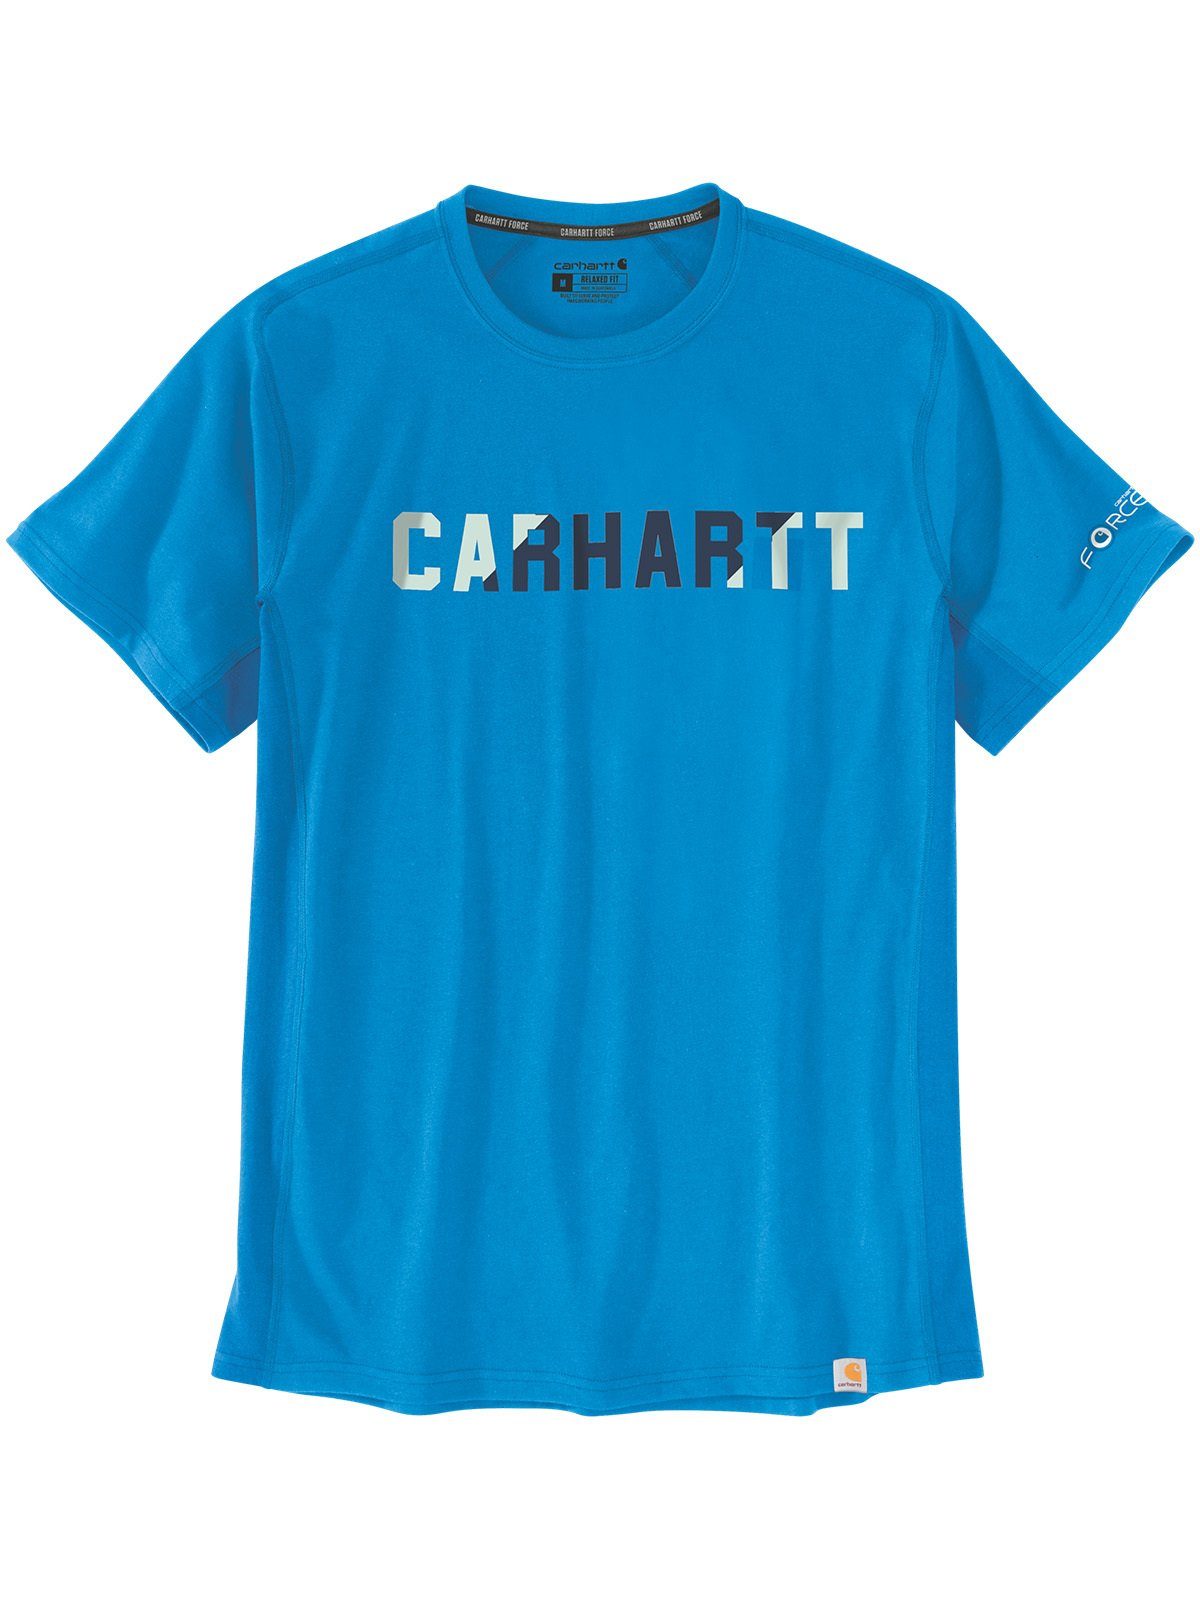 Carhartt T-Shirt Carhartt Logo T-Shirt hellblau azure blue